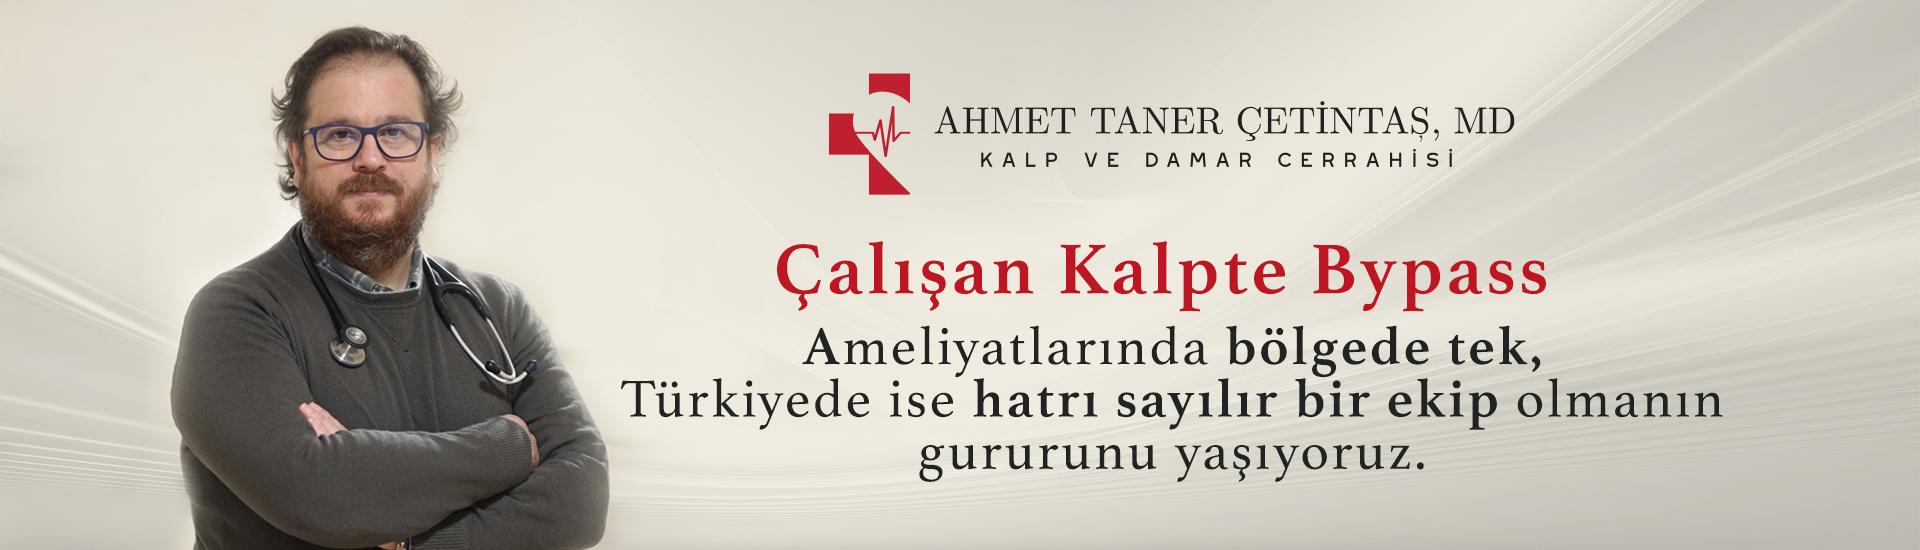 Ahmet Taner Çetnitaş